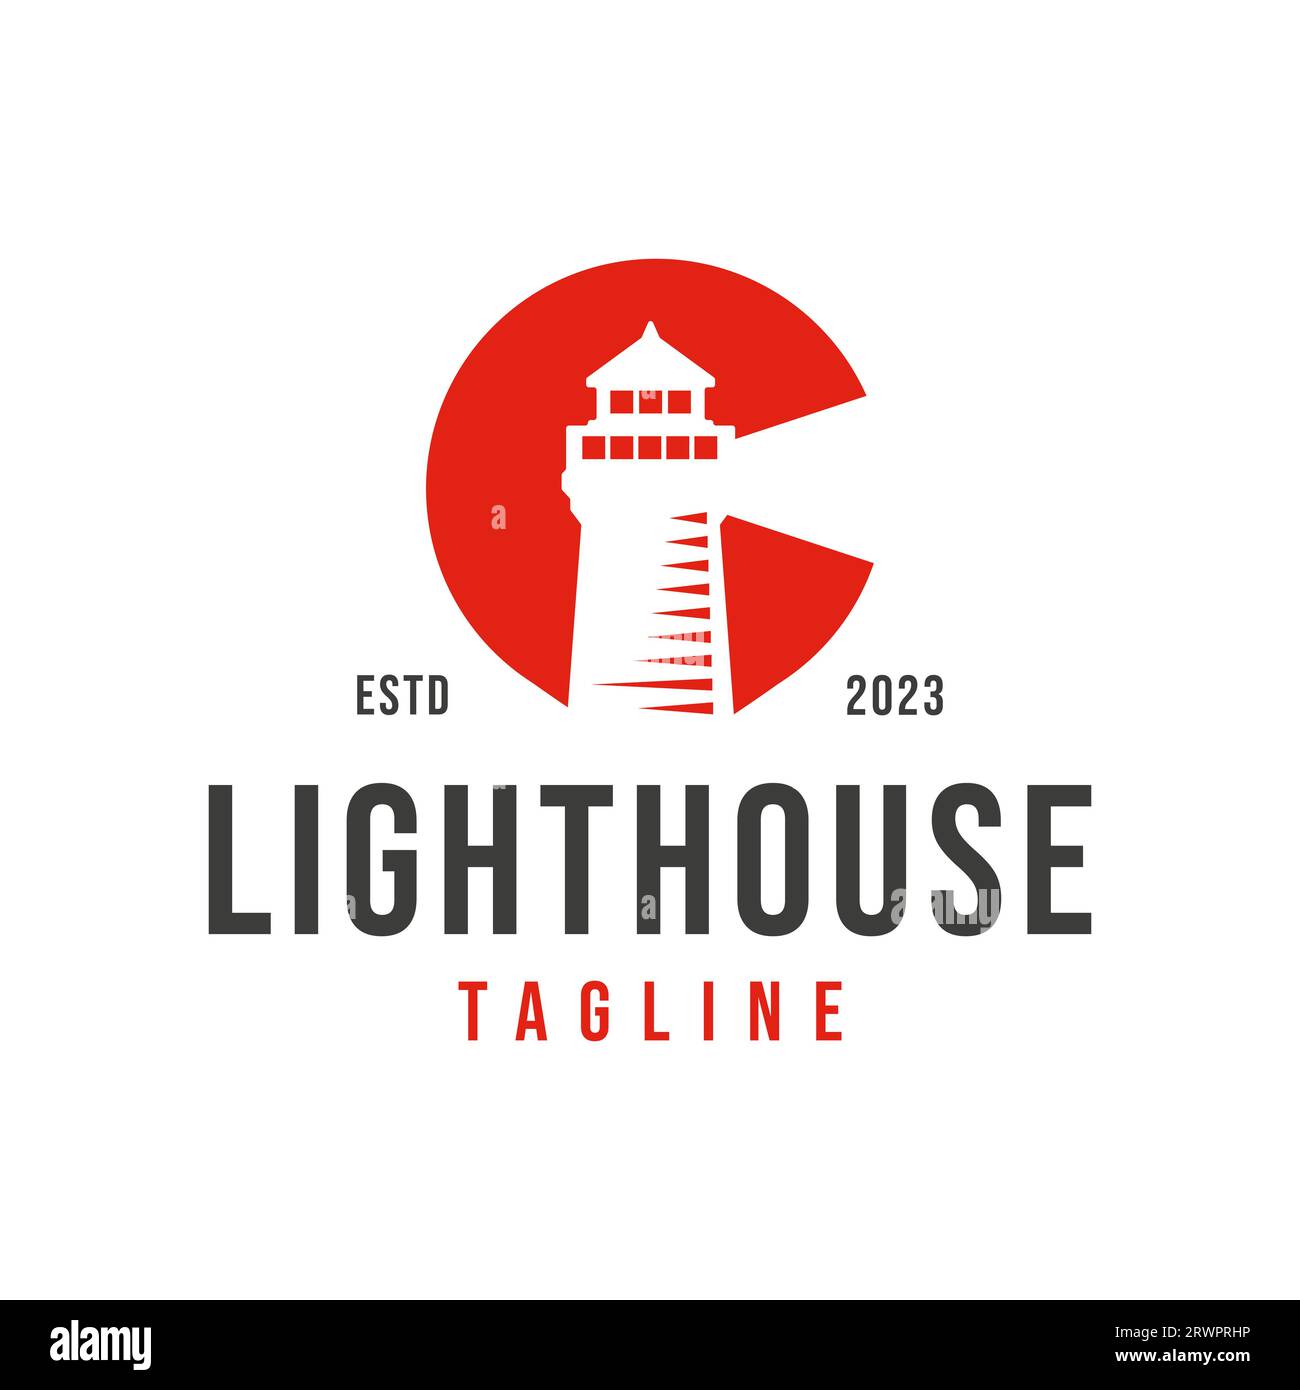 Erster Buchstabe C Tower Building mit Lichtquelle am oberen Lighthouse Marine Navigator Logo Design Vector Stock Vektor